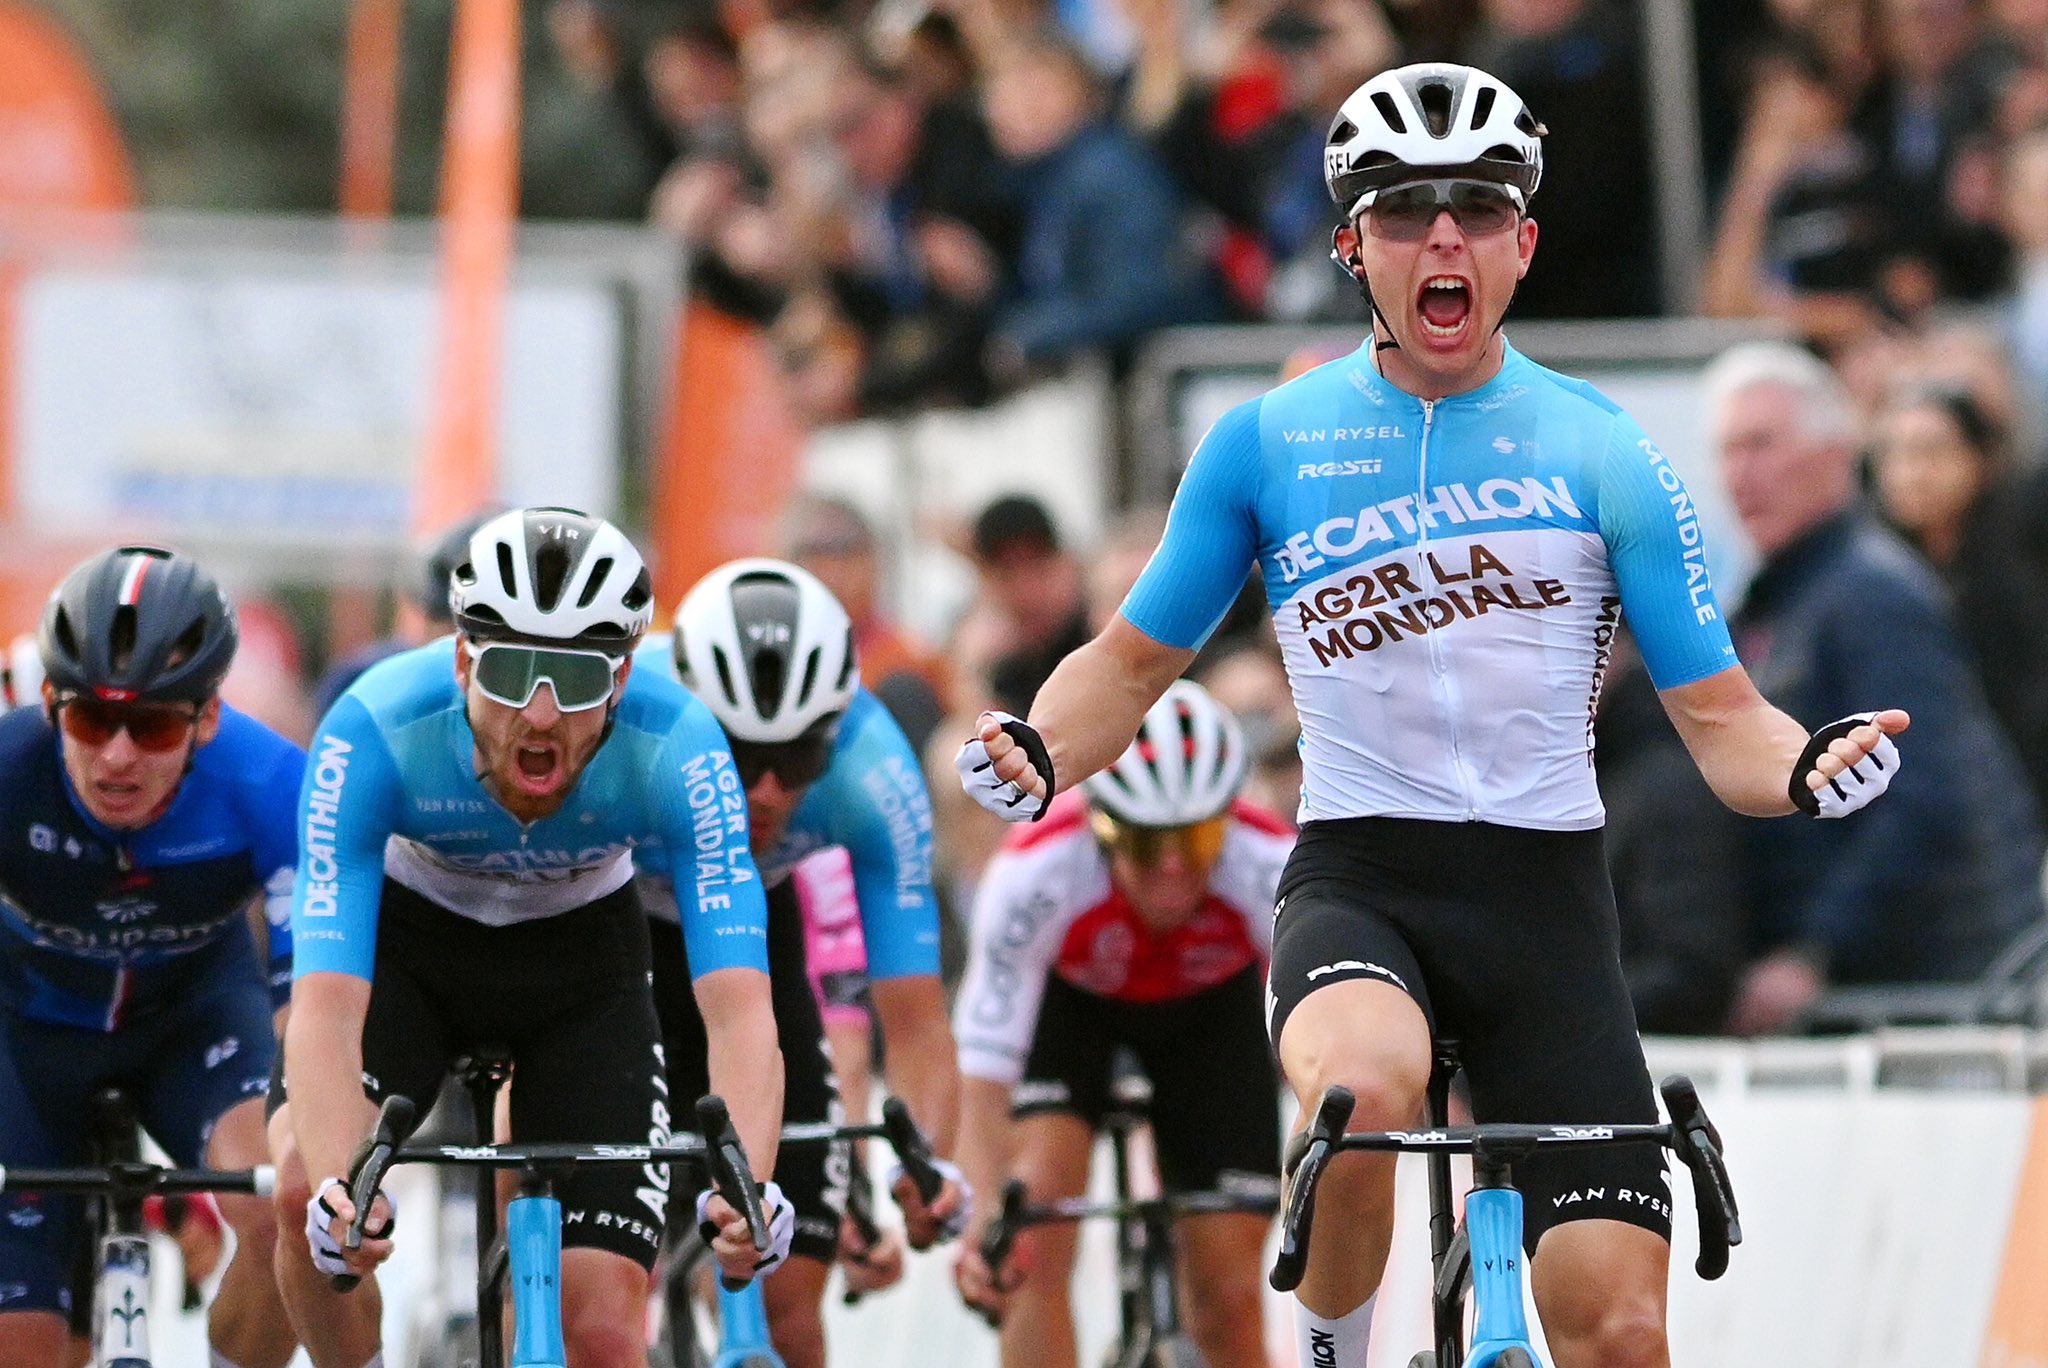 Benoit Cosnefroy regressa às vitórias e conquista o Tour des Alpes-Maritimes!